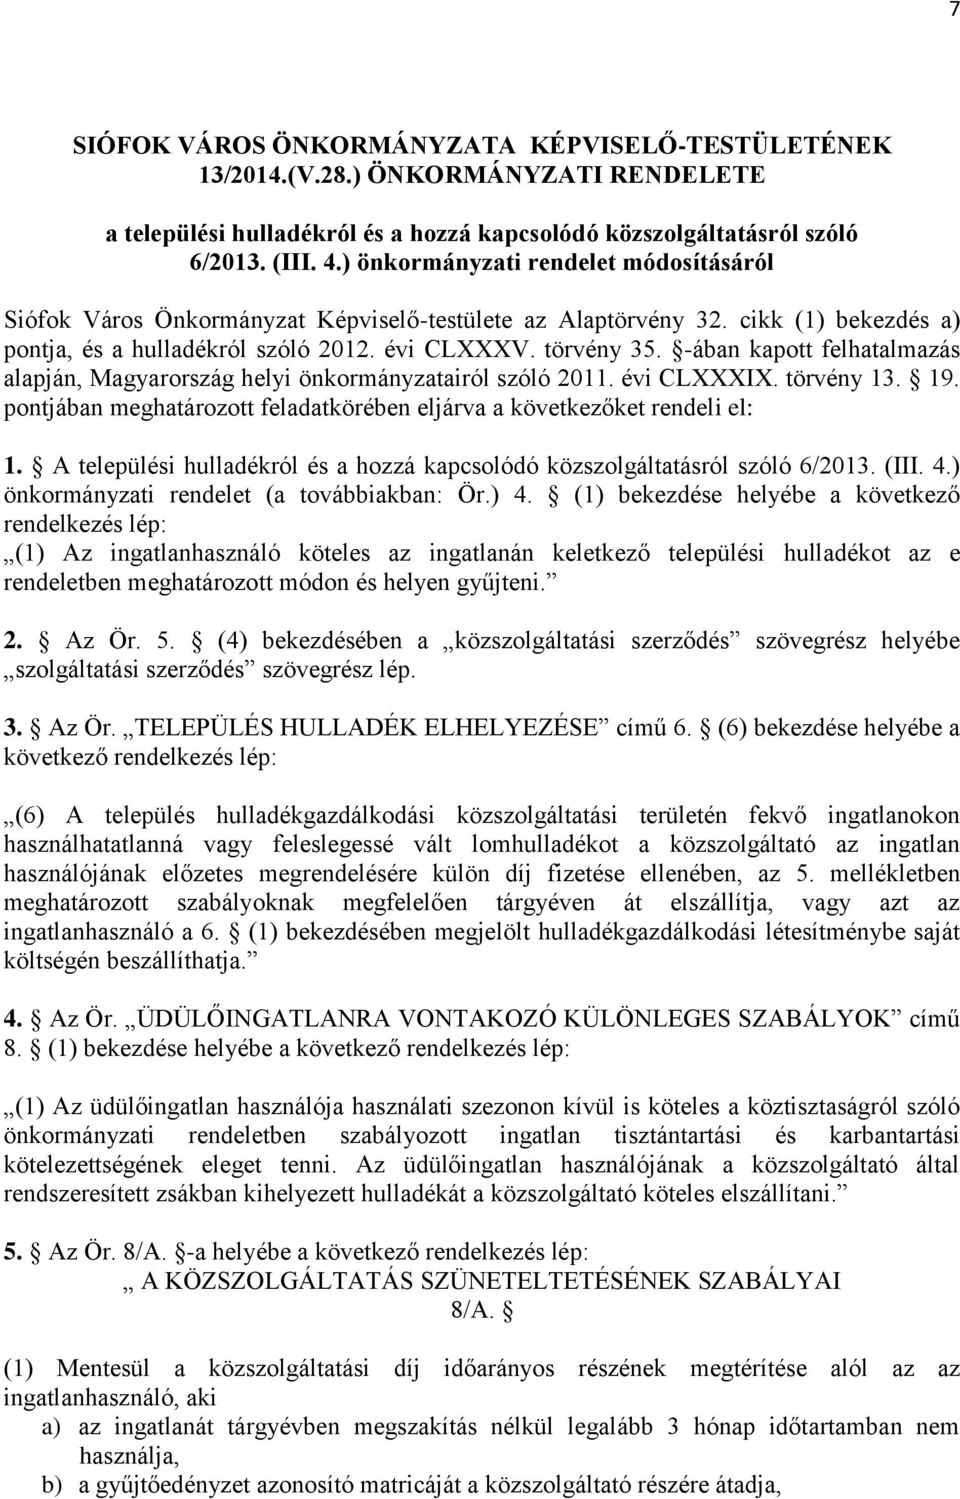 -ában kapott felhatalmazás alapján, Magyarország helyi önkormányzatairól szóló 2011. évi CLXXXIX. törvény 13. 19. pontjában meghatározott feladatkörében eljárva a következőket rendeli el: 1.